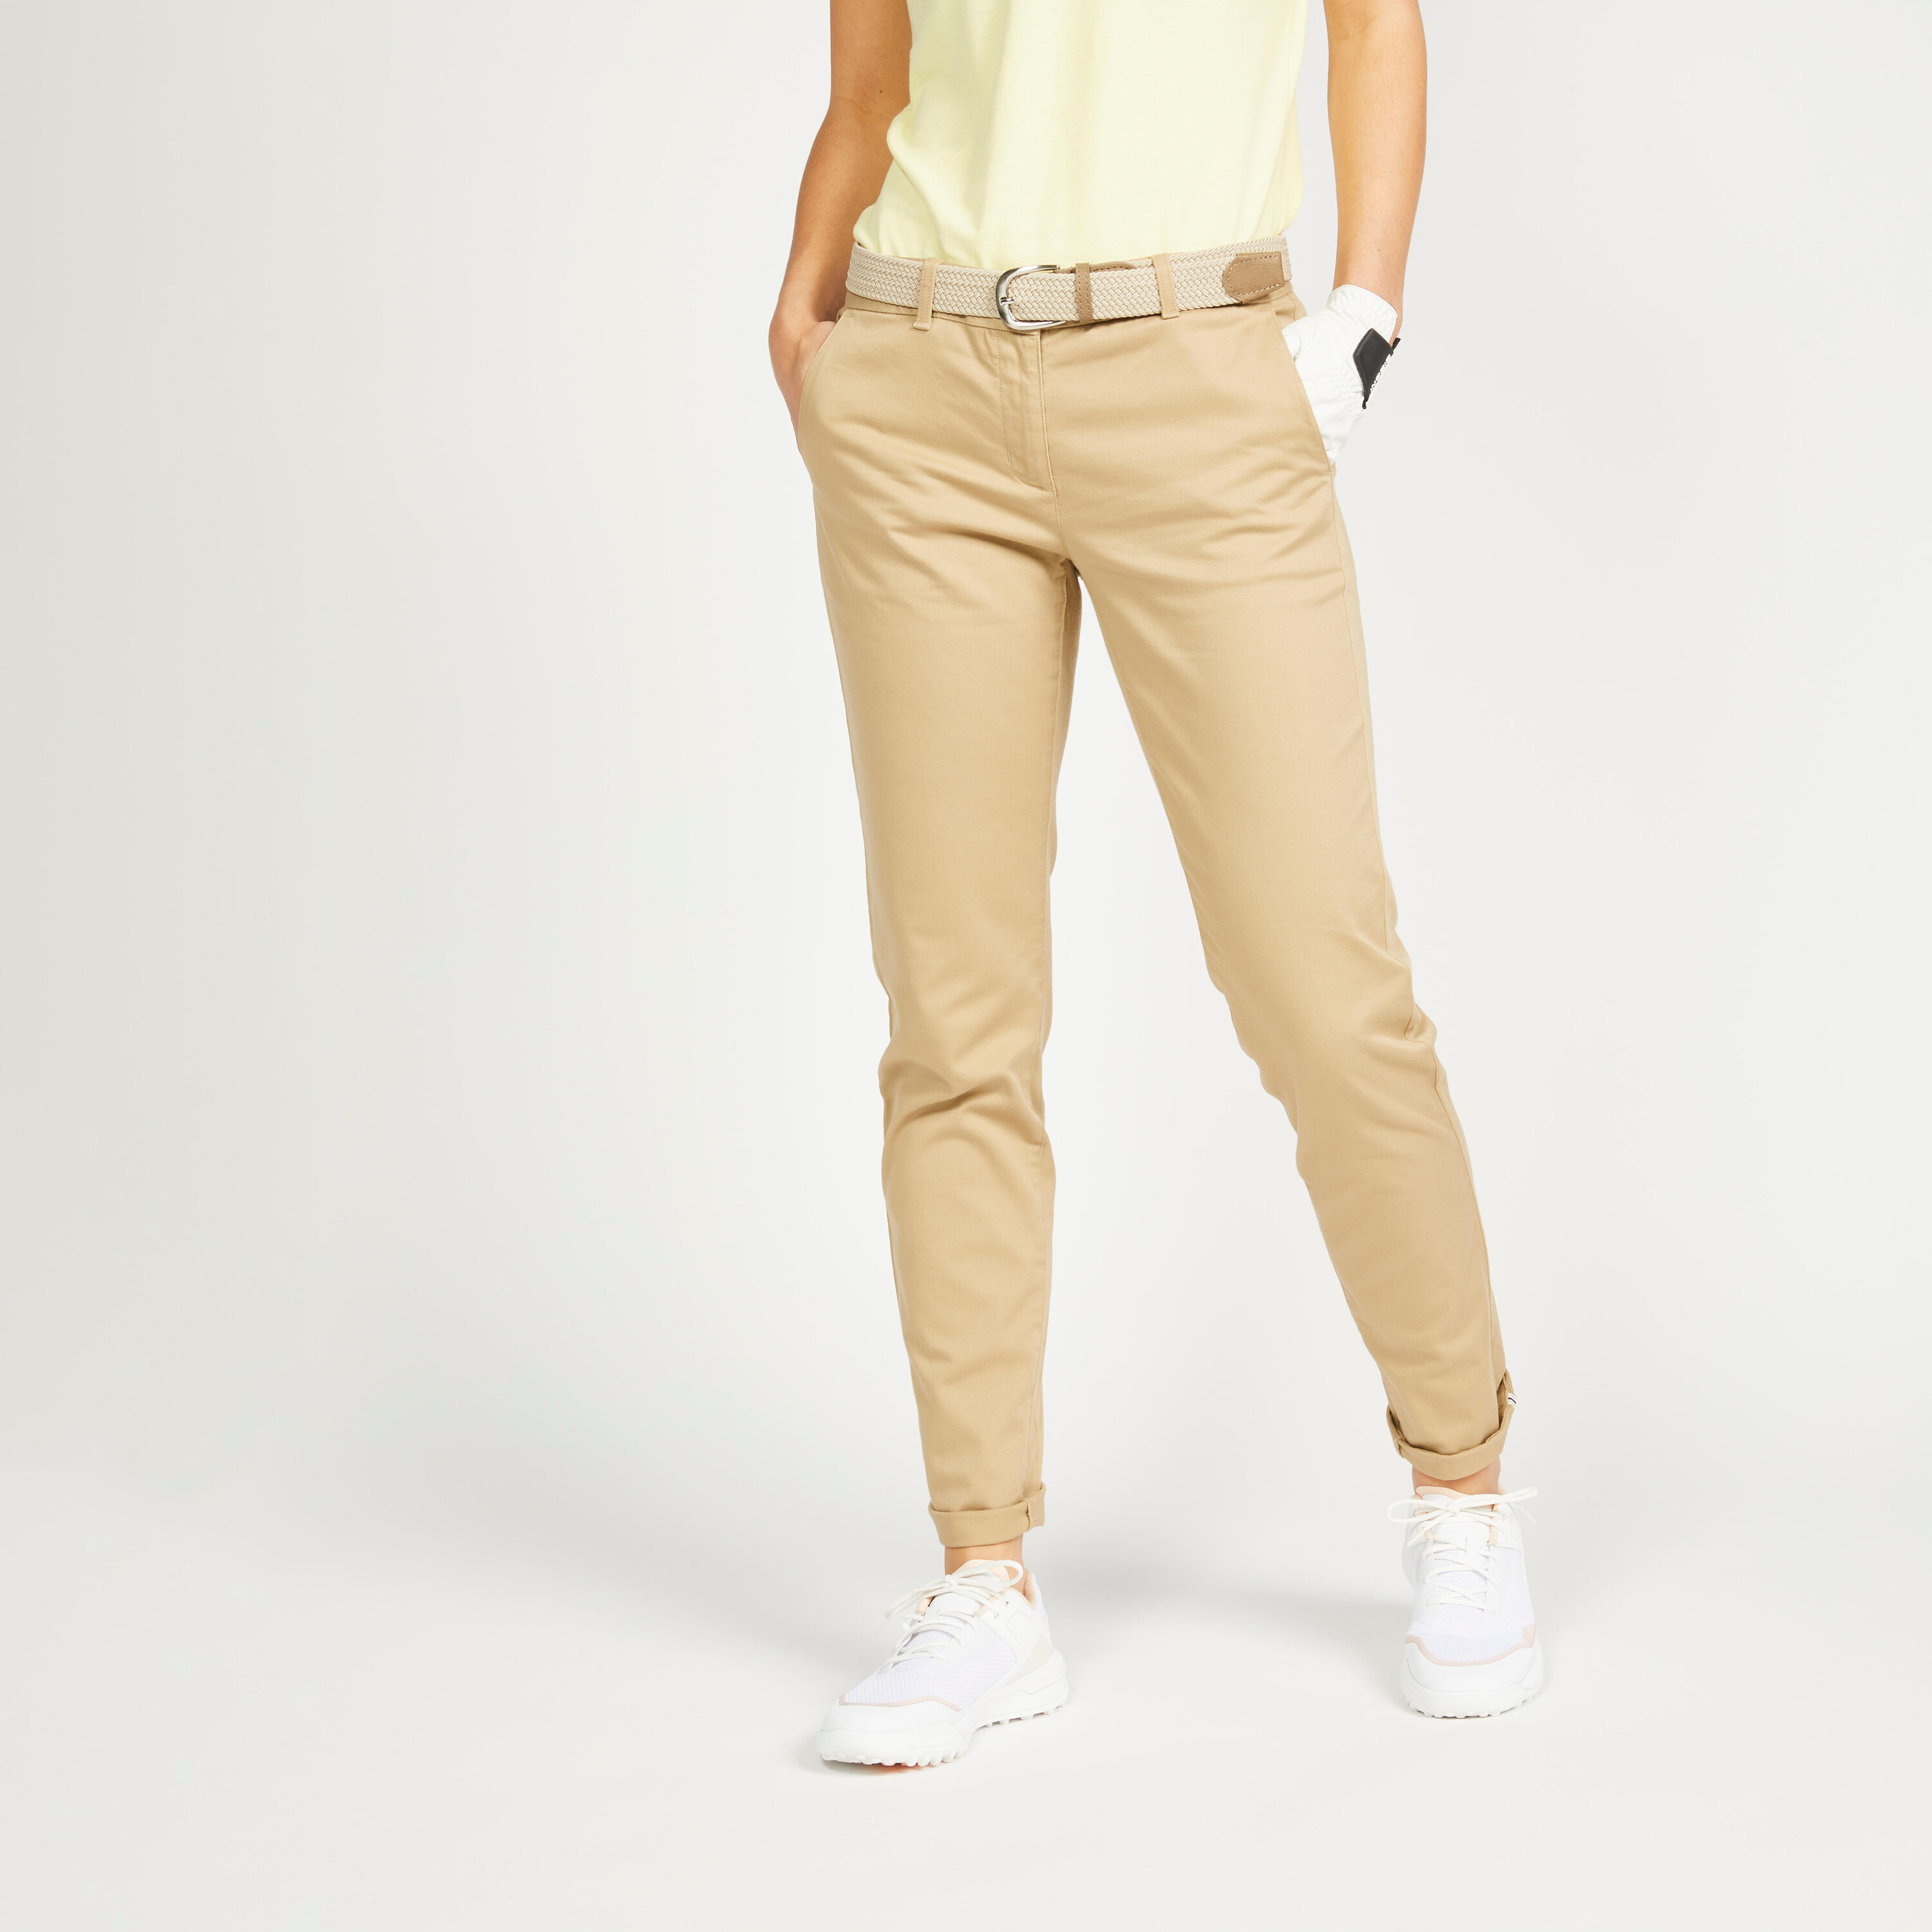 INESIS Women's Golf Trousers - MW500 Beige